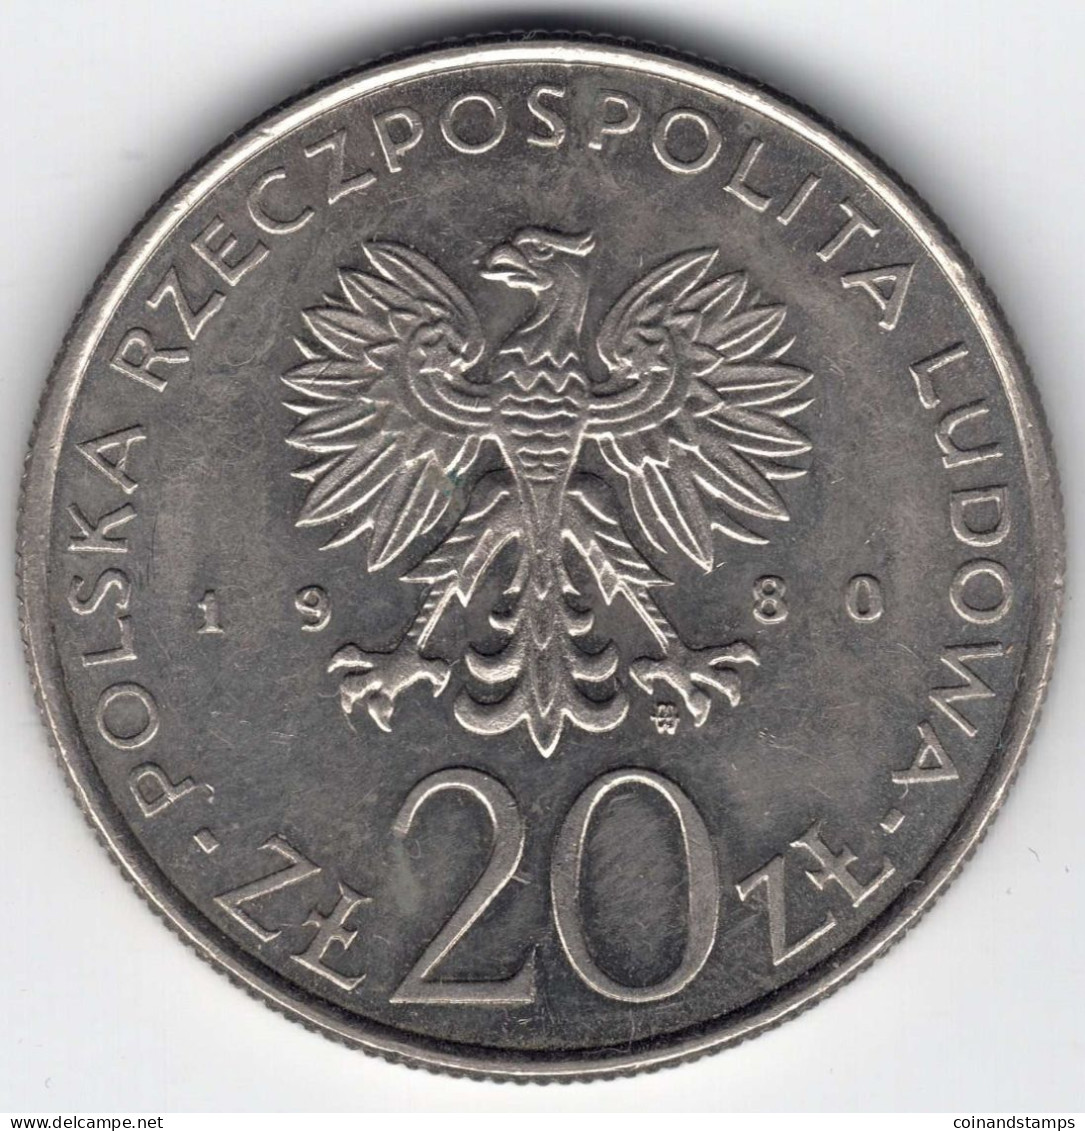 Polen 20 Zloty 1980 (Cu./Ni.) XXII. Olympische Spiele Moskau, MzSt. Warschau, KM#108, Ss/vz - Poland